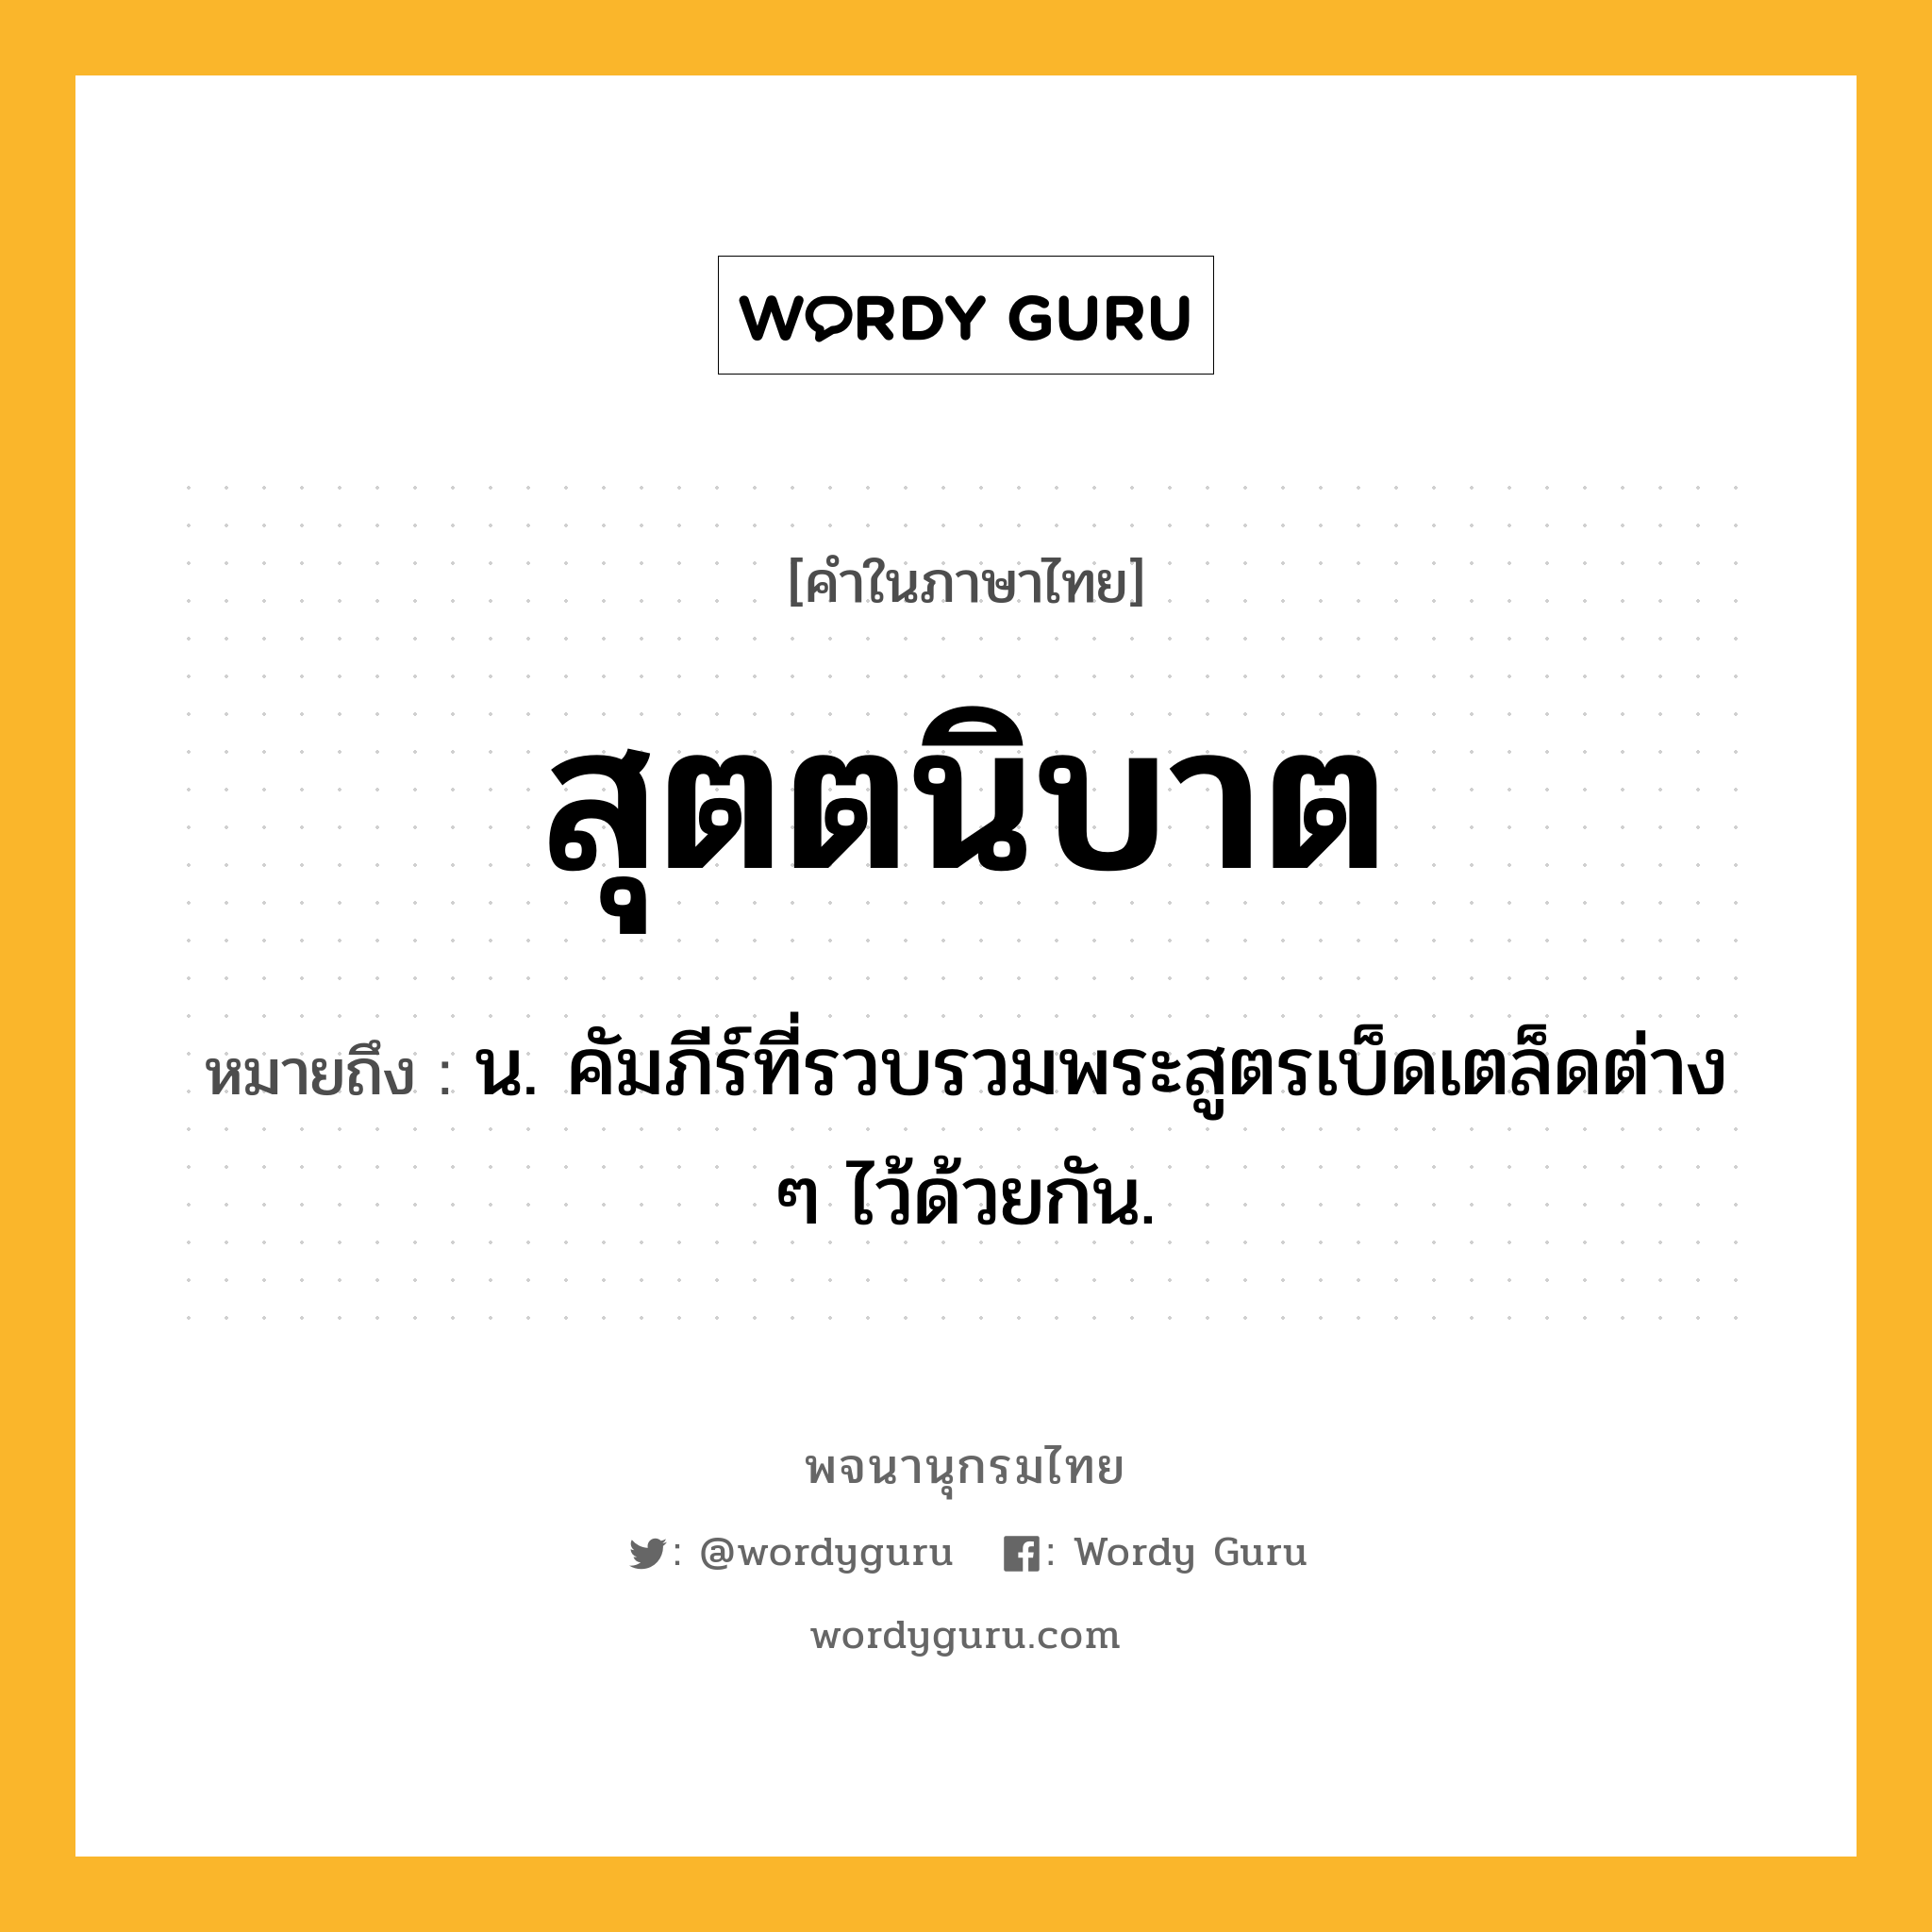 สุตตนิบาต ความหมาย หมายถึงอะไร?, คำในภาษาไทย สุตตนิบาต หมายถึง น. คัมภีร์ที่รวบรวมพระสูตรเบ็ดเตล็ดต่าง ๆ ไว้ด้วยกัน.